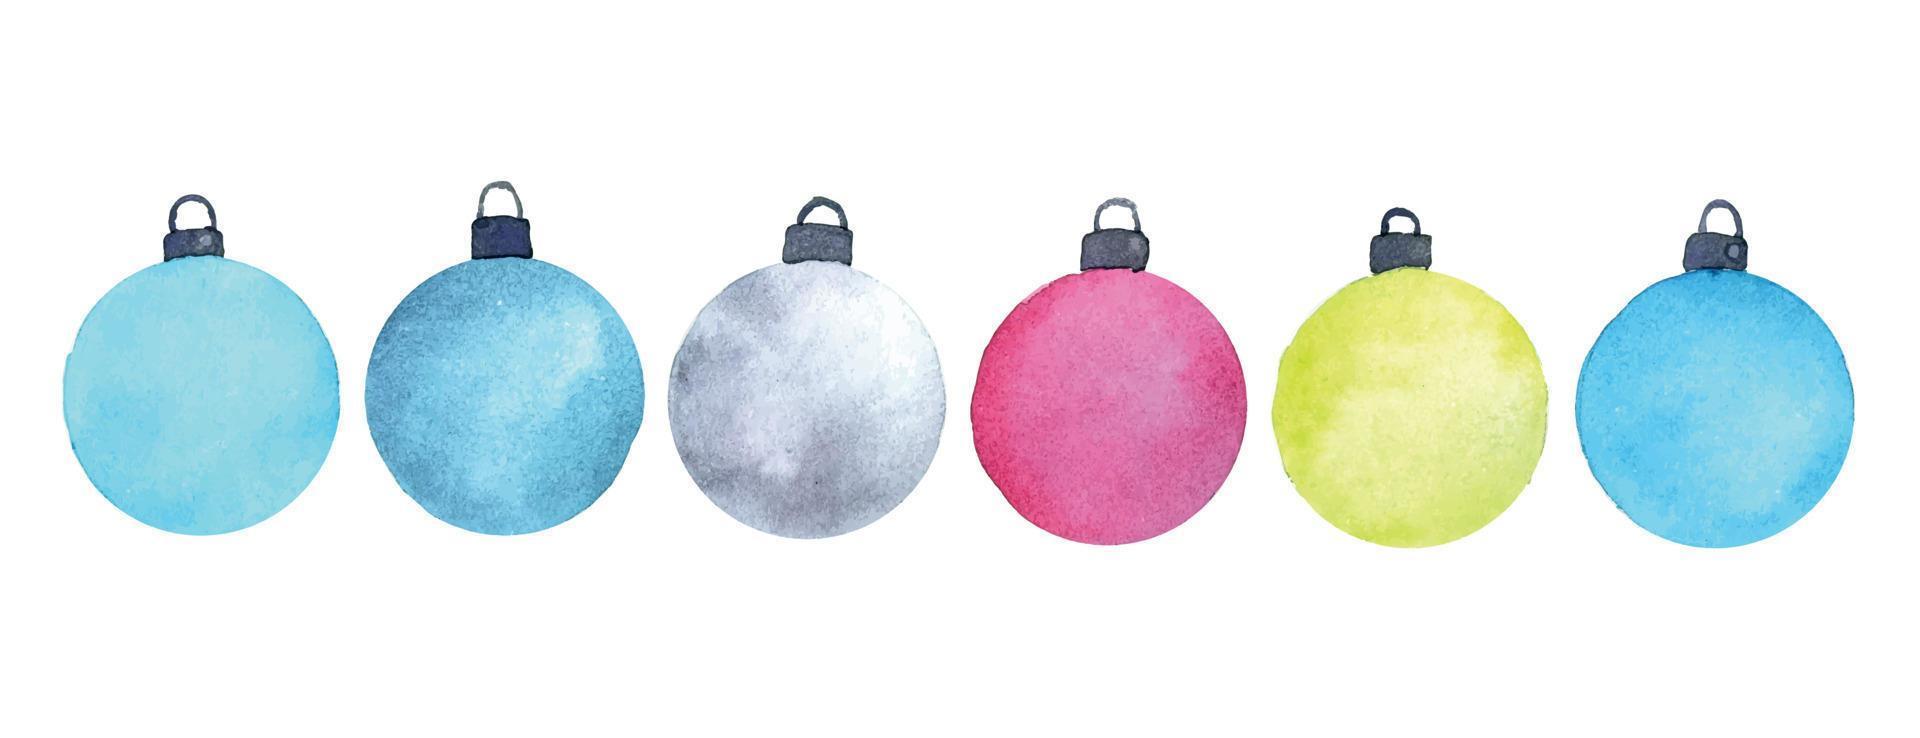 juego de acuarela con bolas de navidad abstractas. juguetes de árbol de navidad de colores brillantes. simple impresión de navidad año nuevo aislado sobre fondo blanco vector